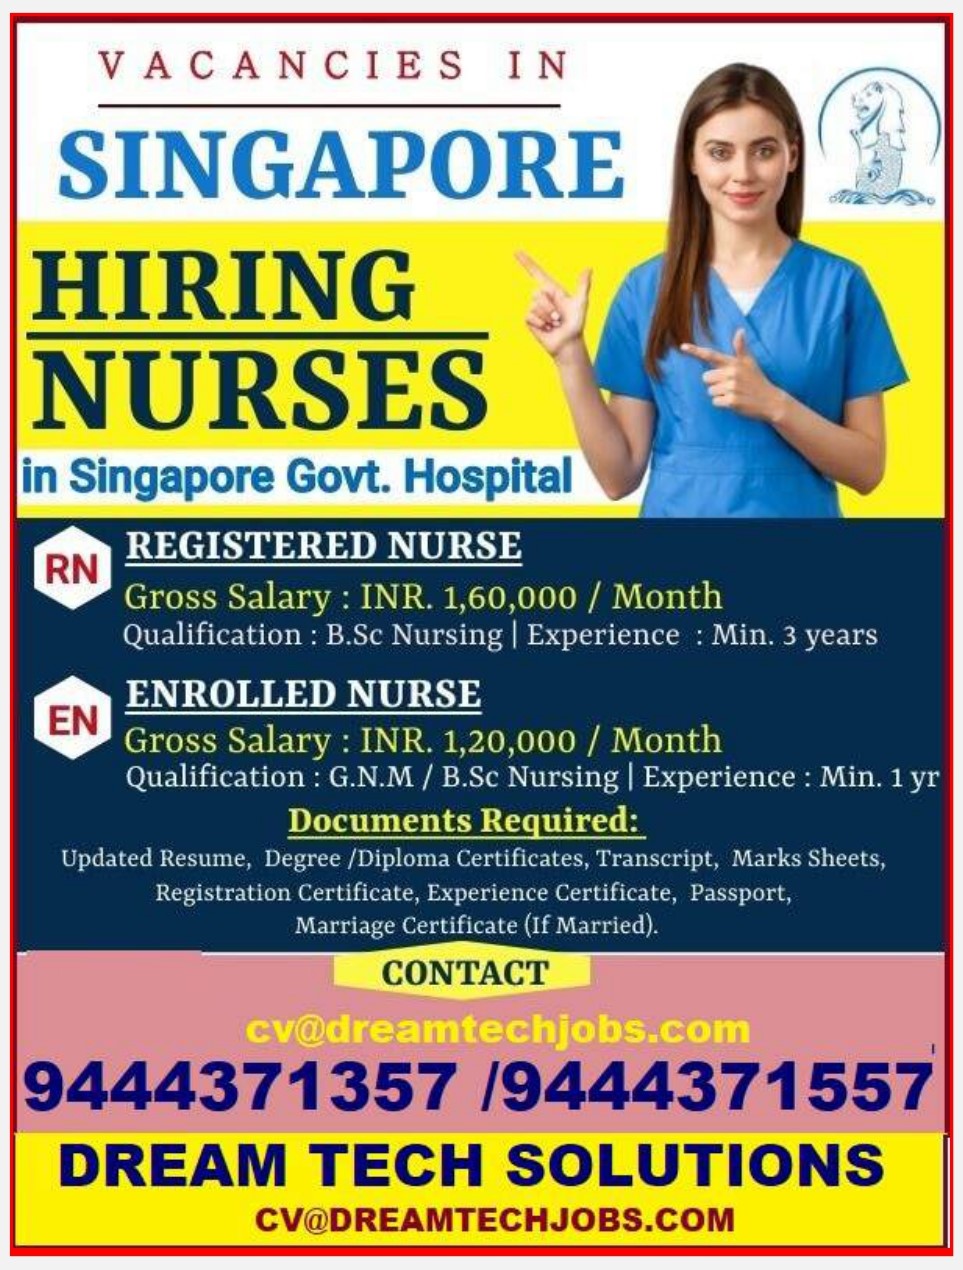 Vacancies in Singapore for Nurse